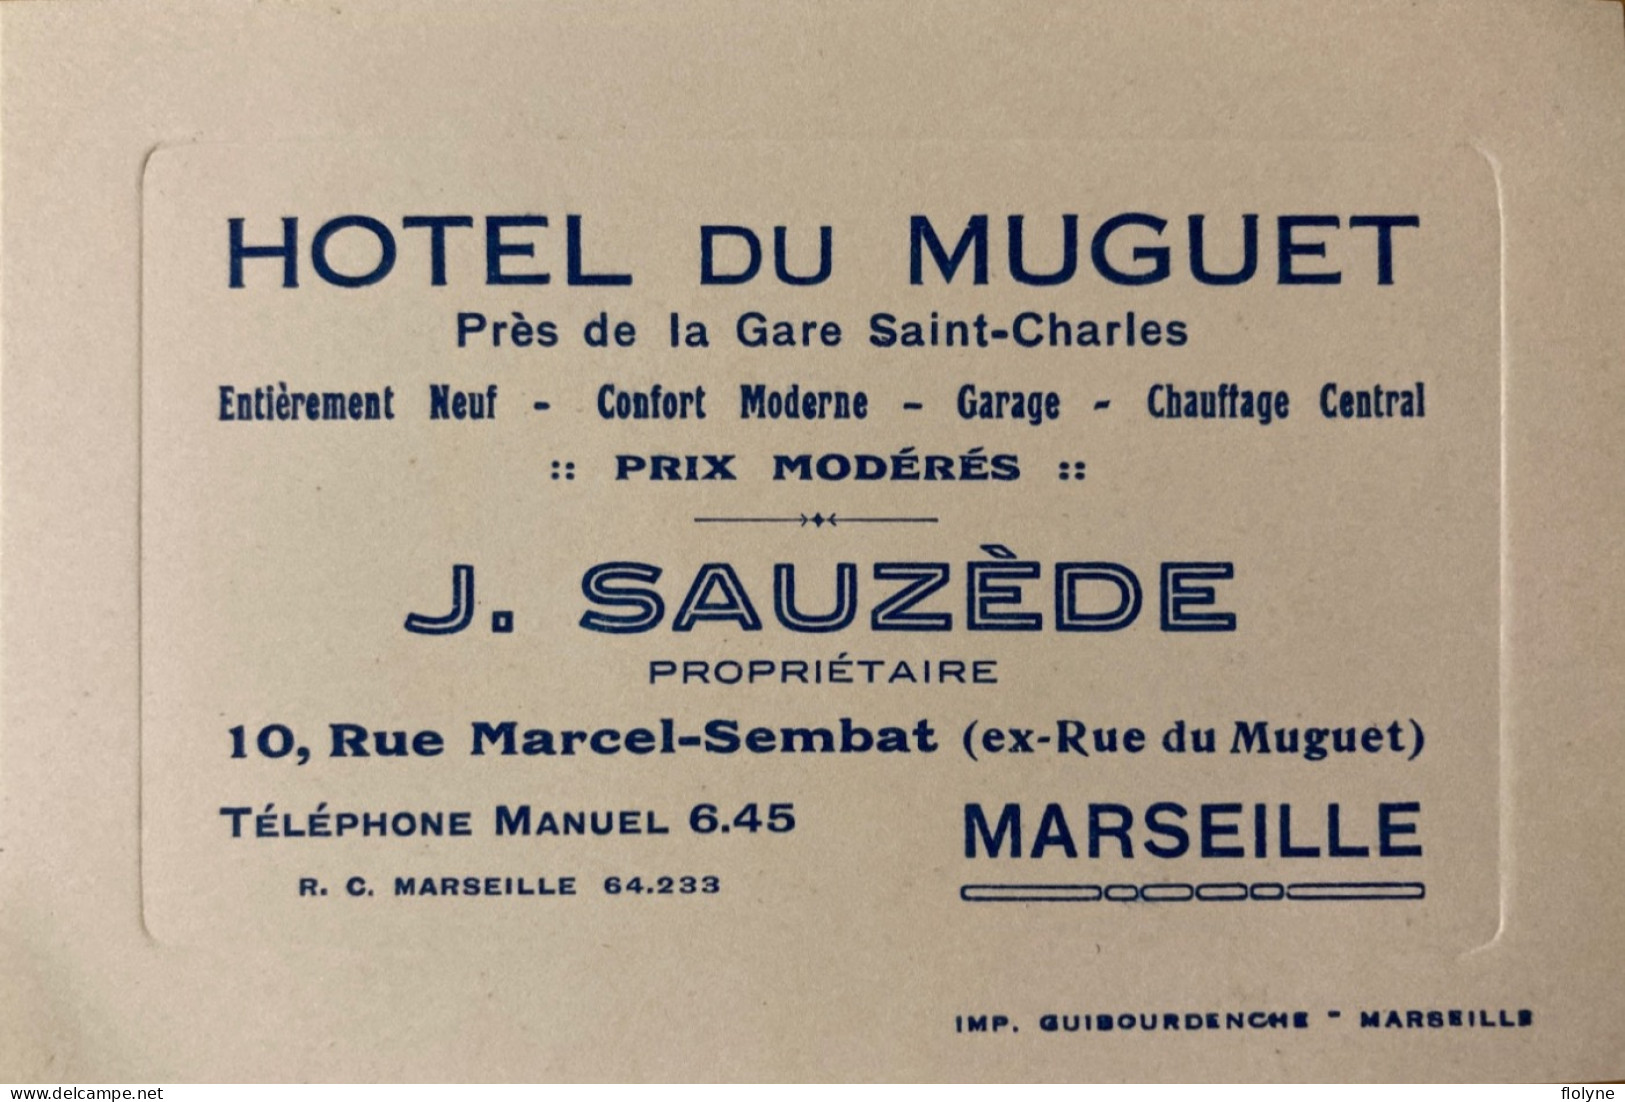 Marseille - HÔTEL DU MUGUET , J. SAUZÈDE Propriétaire - Carte De Visite - 10 Rue Marcel Sembat - Pub Publicité - Canebière, Centro